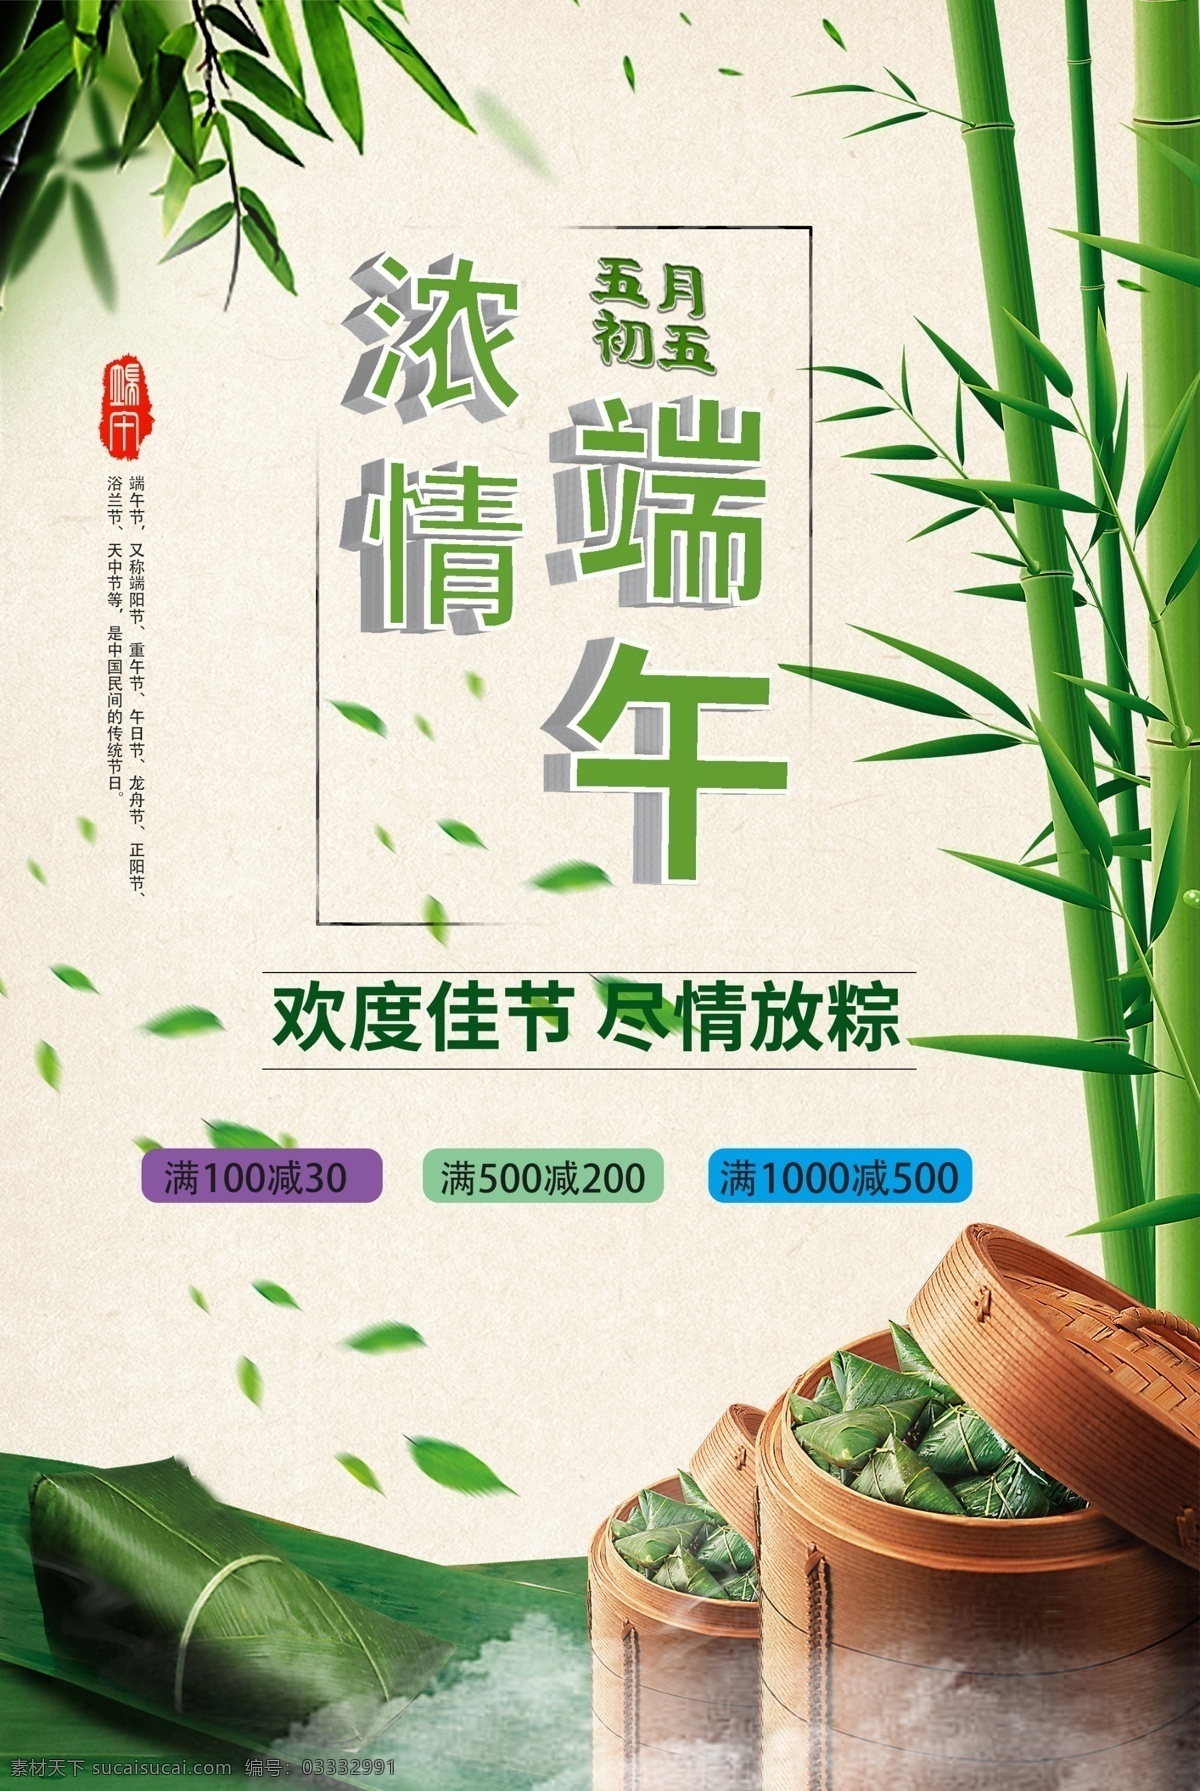 端午节 促销 推广 宣传海报 宣传 海报 粽子 竹子